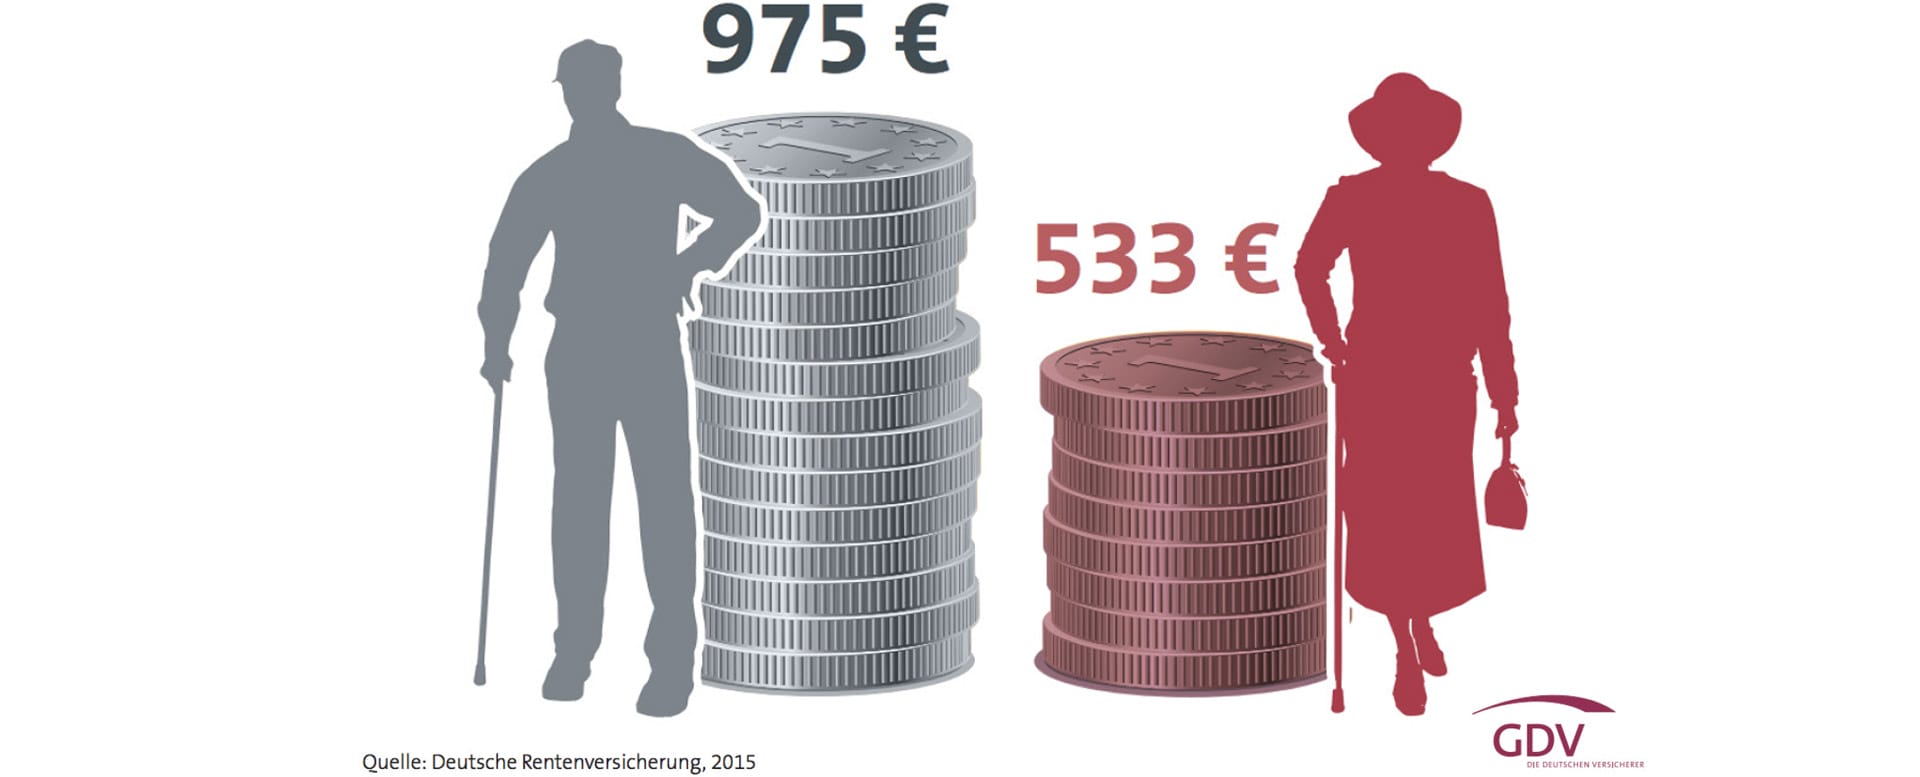 Durchschnittliche Rente für Neurentner 2014